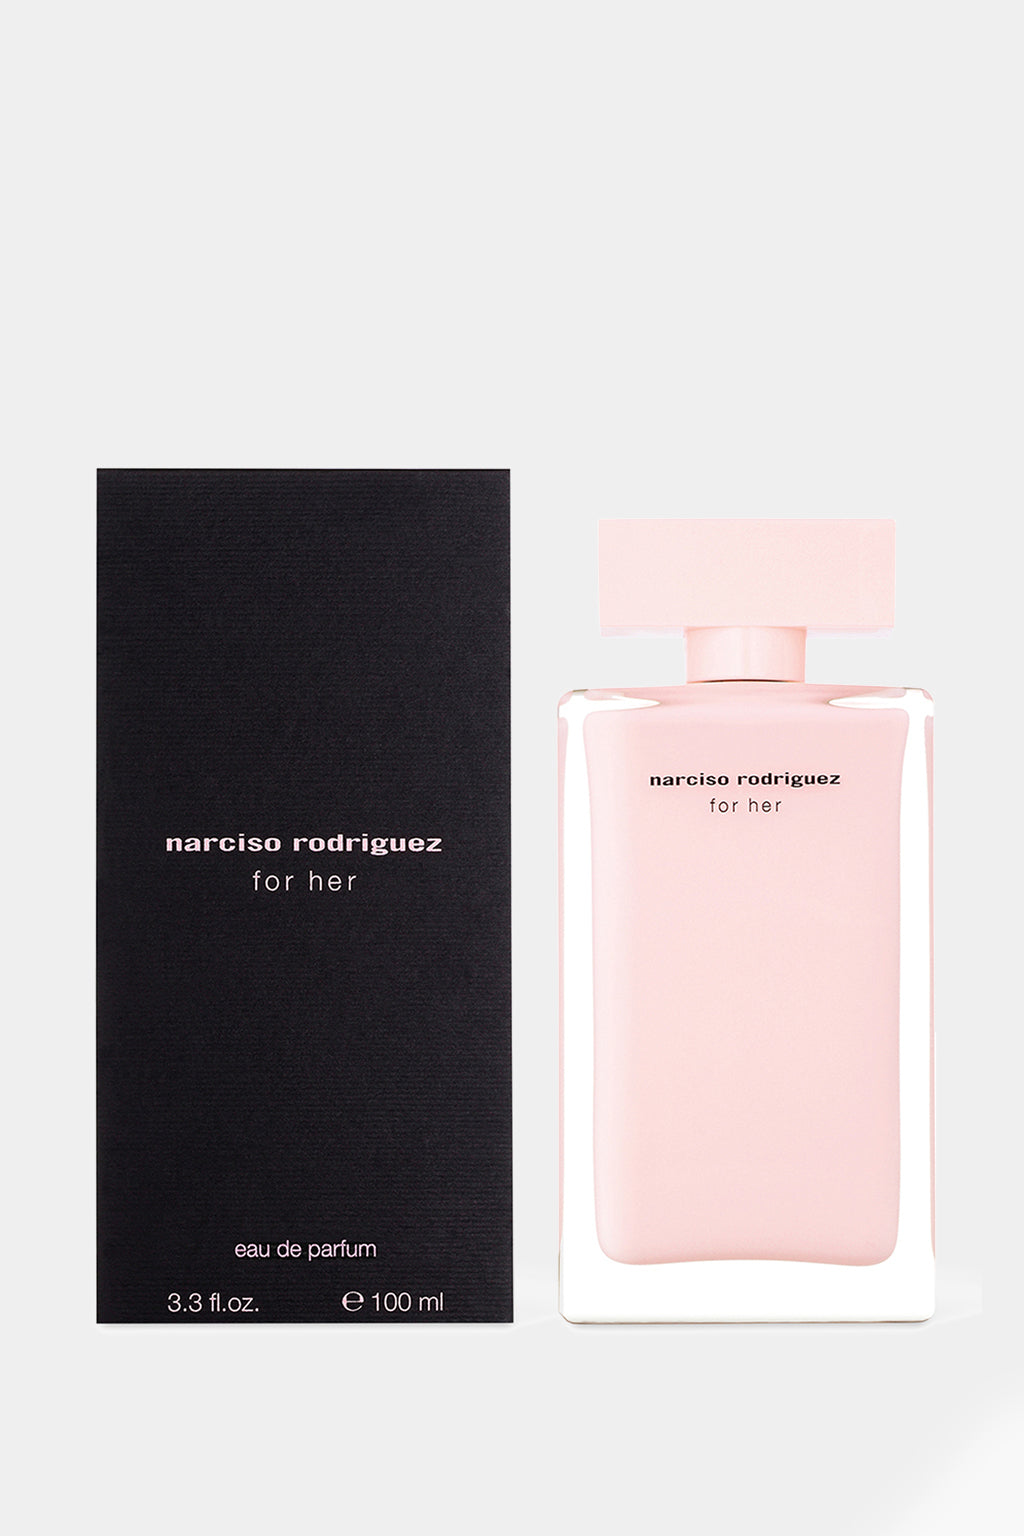 Narciso Rodriguez - For Her Eau de Parfum